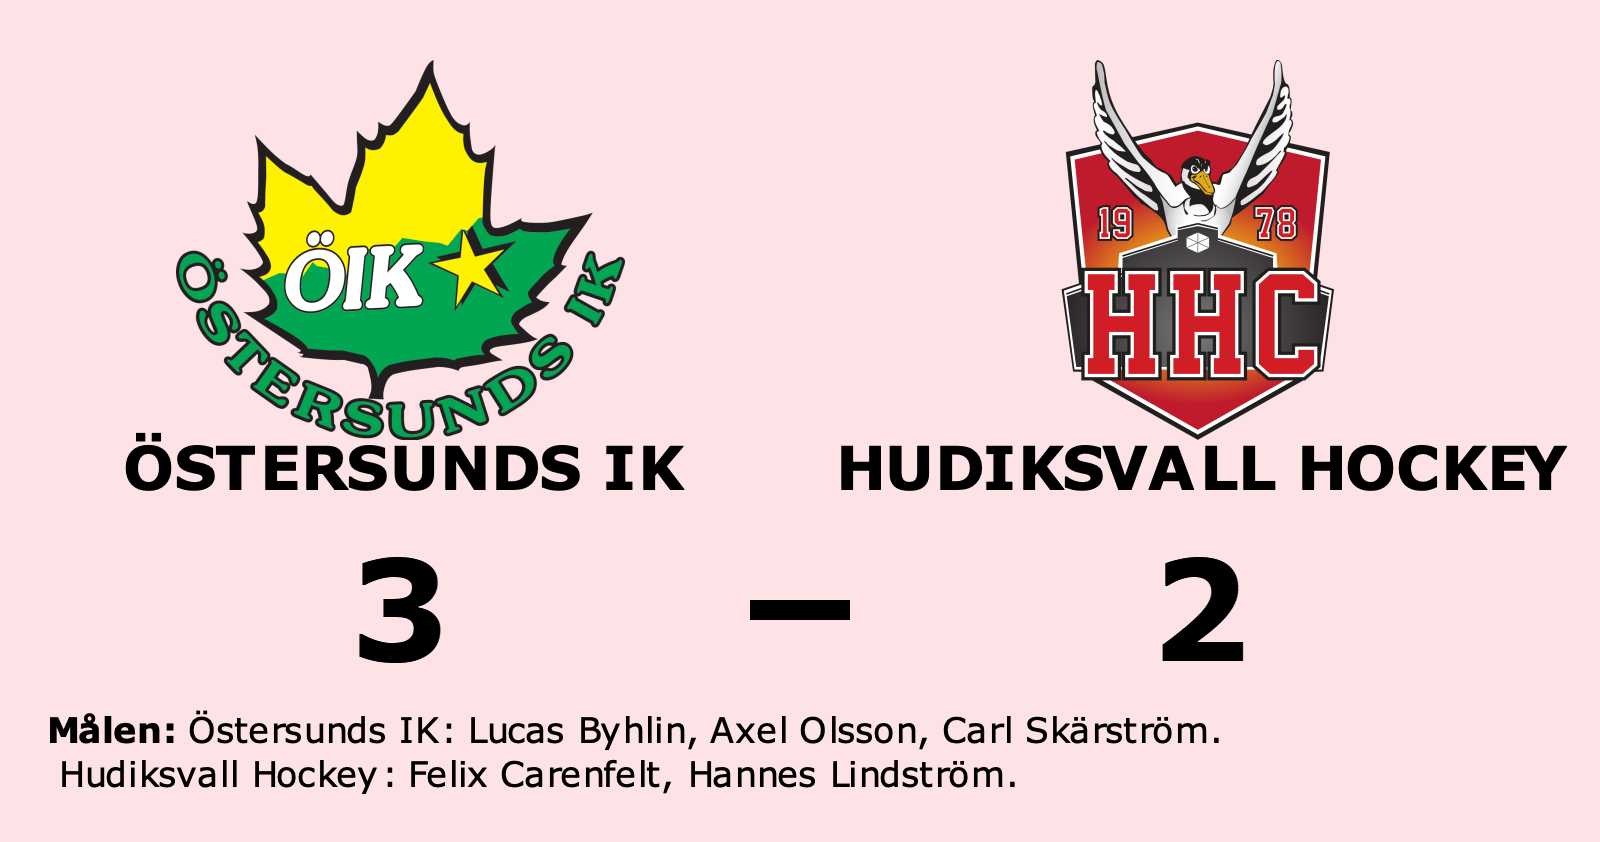 Tung start för Hudiksvall Hockey efter förlust mot Östersunds IK